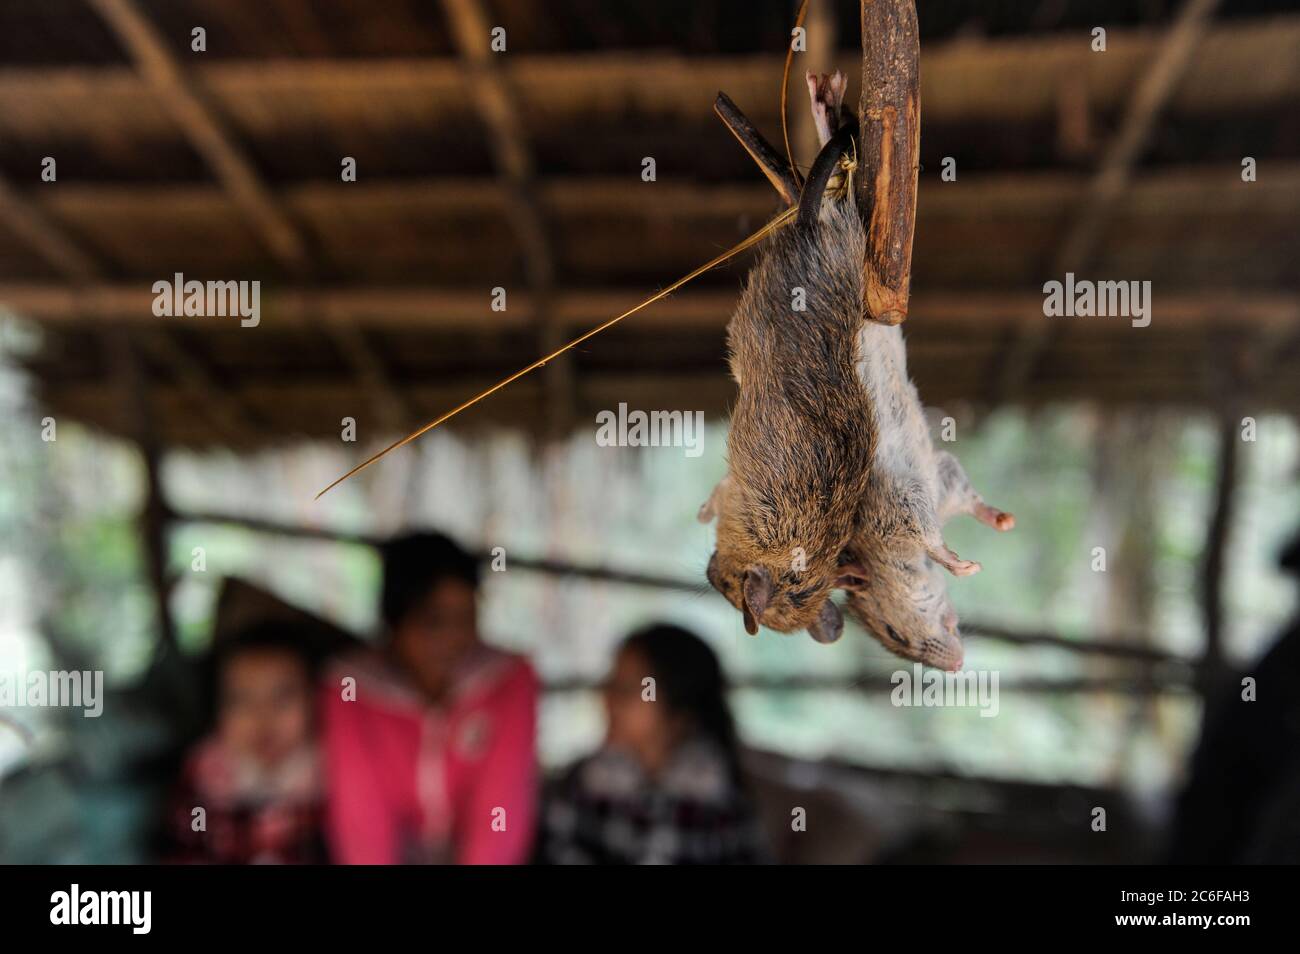 LAO PDR, market with rodents for sale to eat, wild animals cause transmission of virus from animal to human  / Laos, Bergbewohner verkaufen wilde Tiere, Nagetiere zum essen, Übertragung von Krankheiten Stock Photo